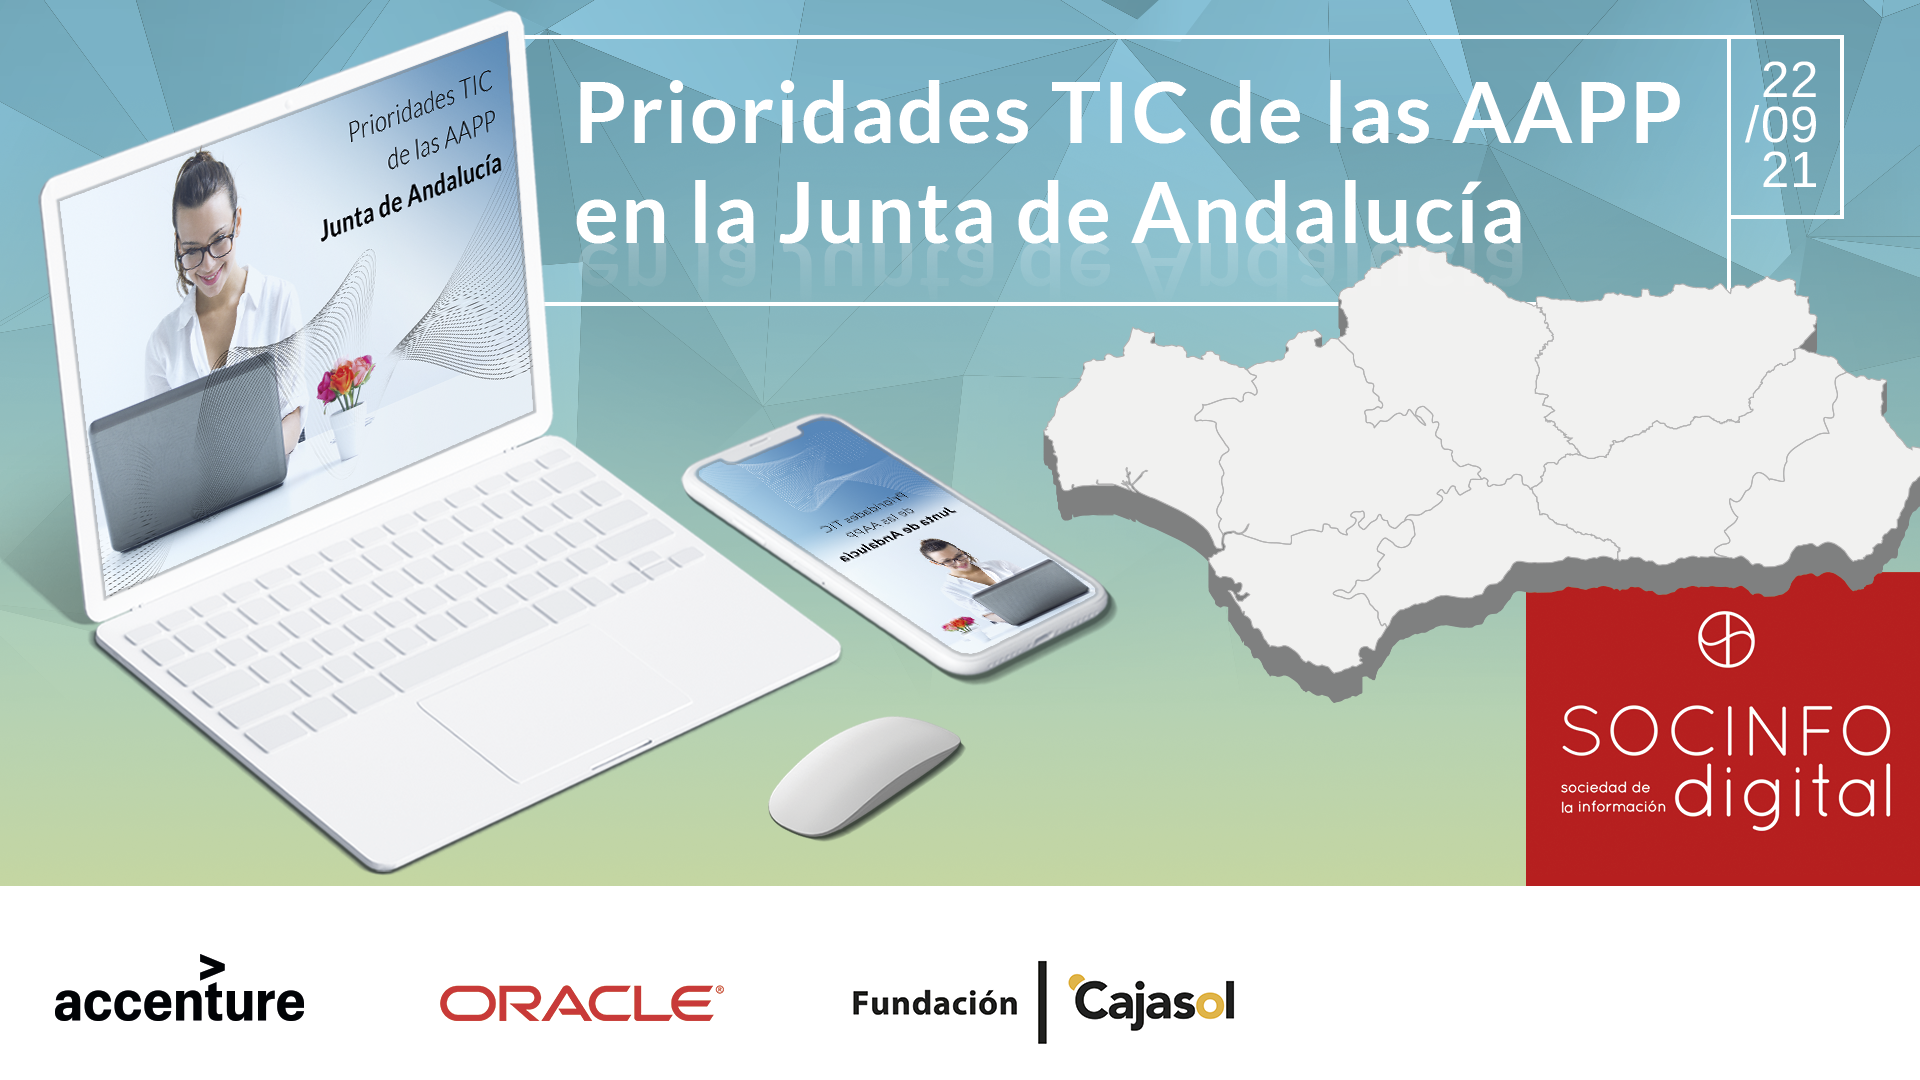 Prioridades TIC de las AAPP en Andalucía